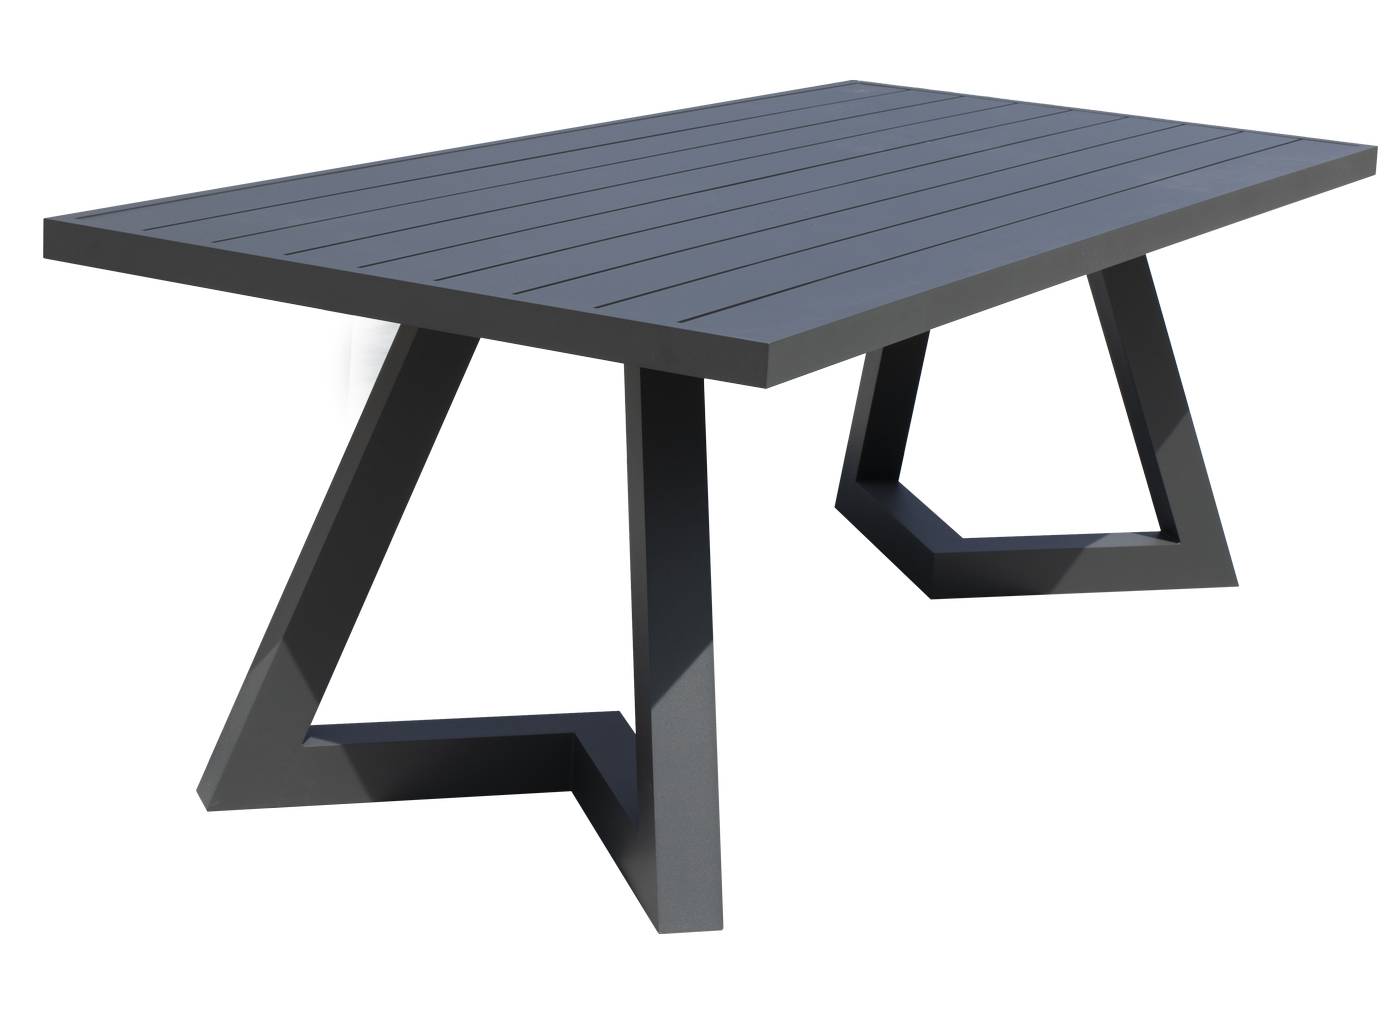 Mesa de aluminio con tablero de HPL o de lamas de aluminio. Disponible en dos medidas (180 y 220 cm) y en varios colores.